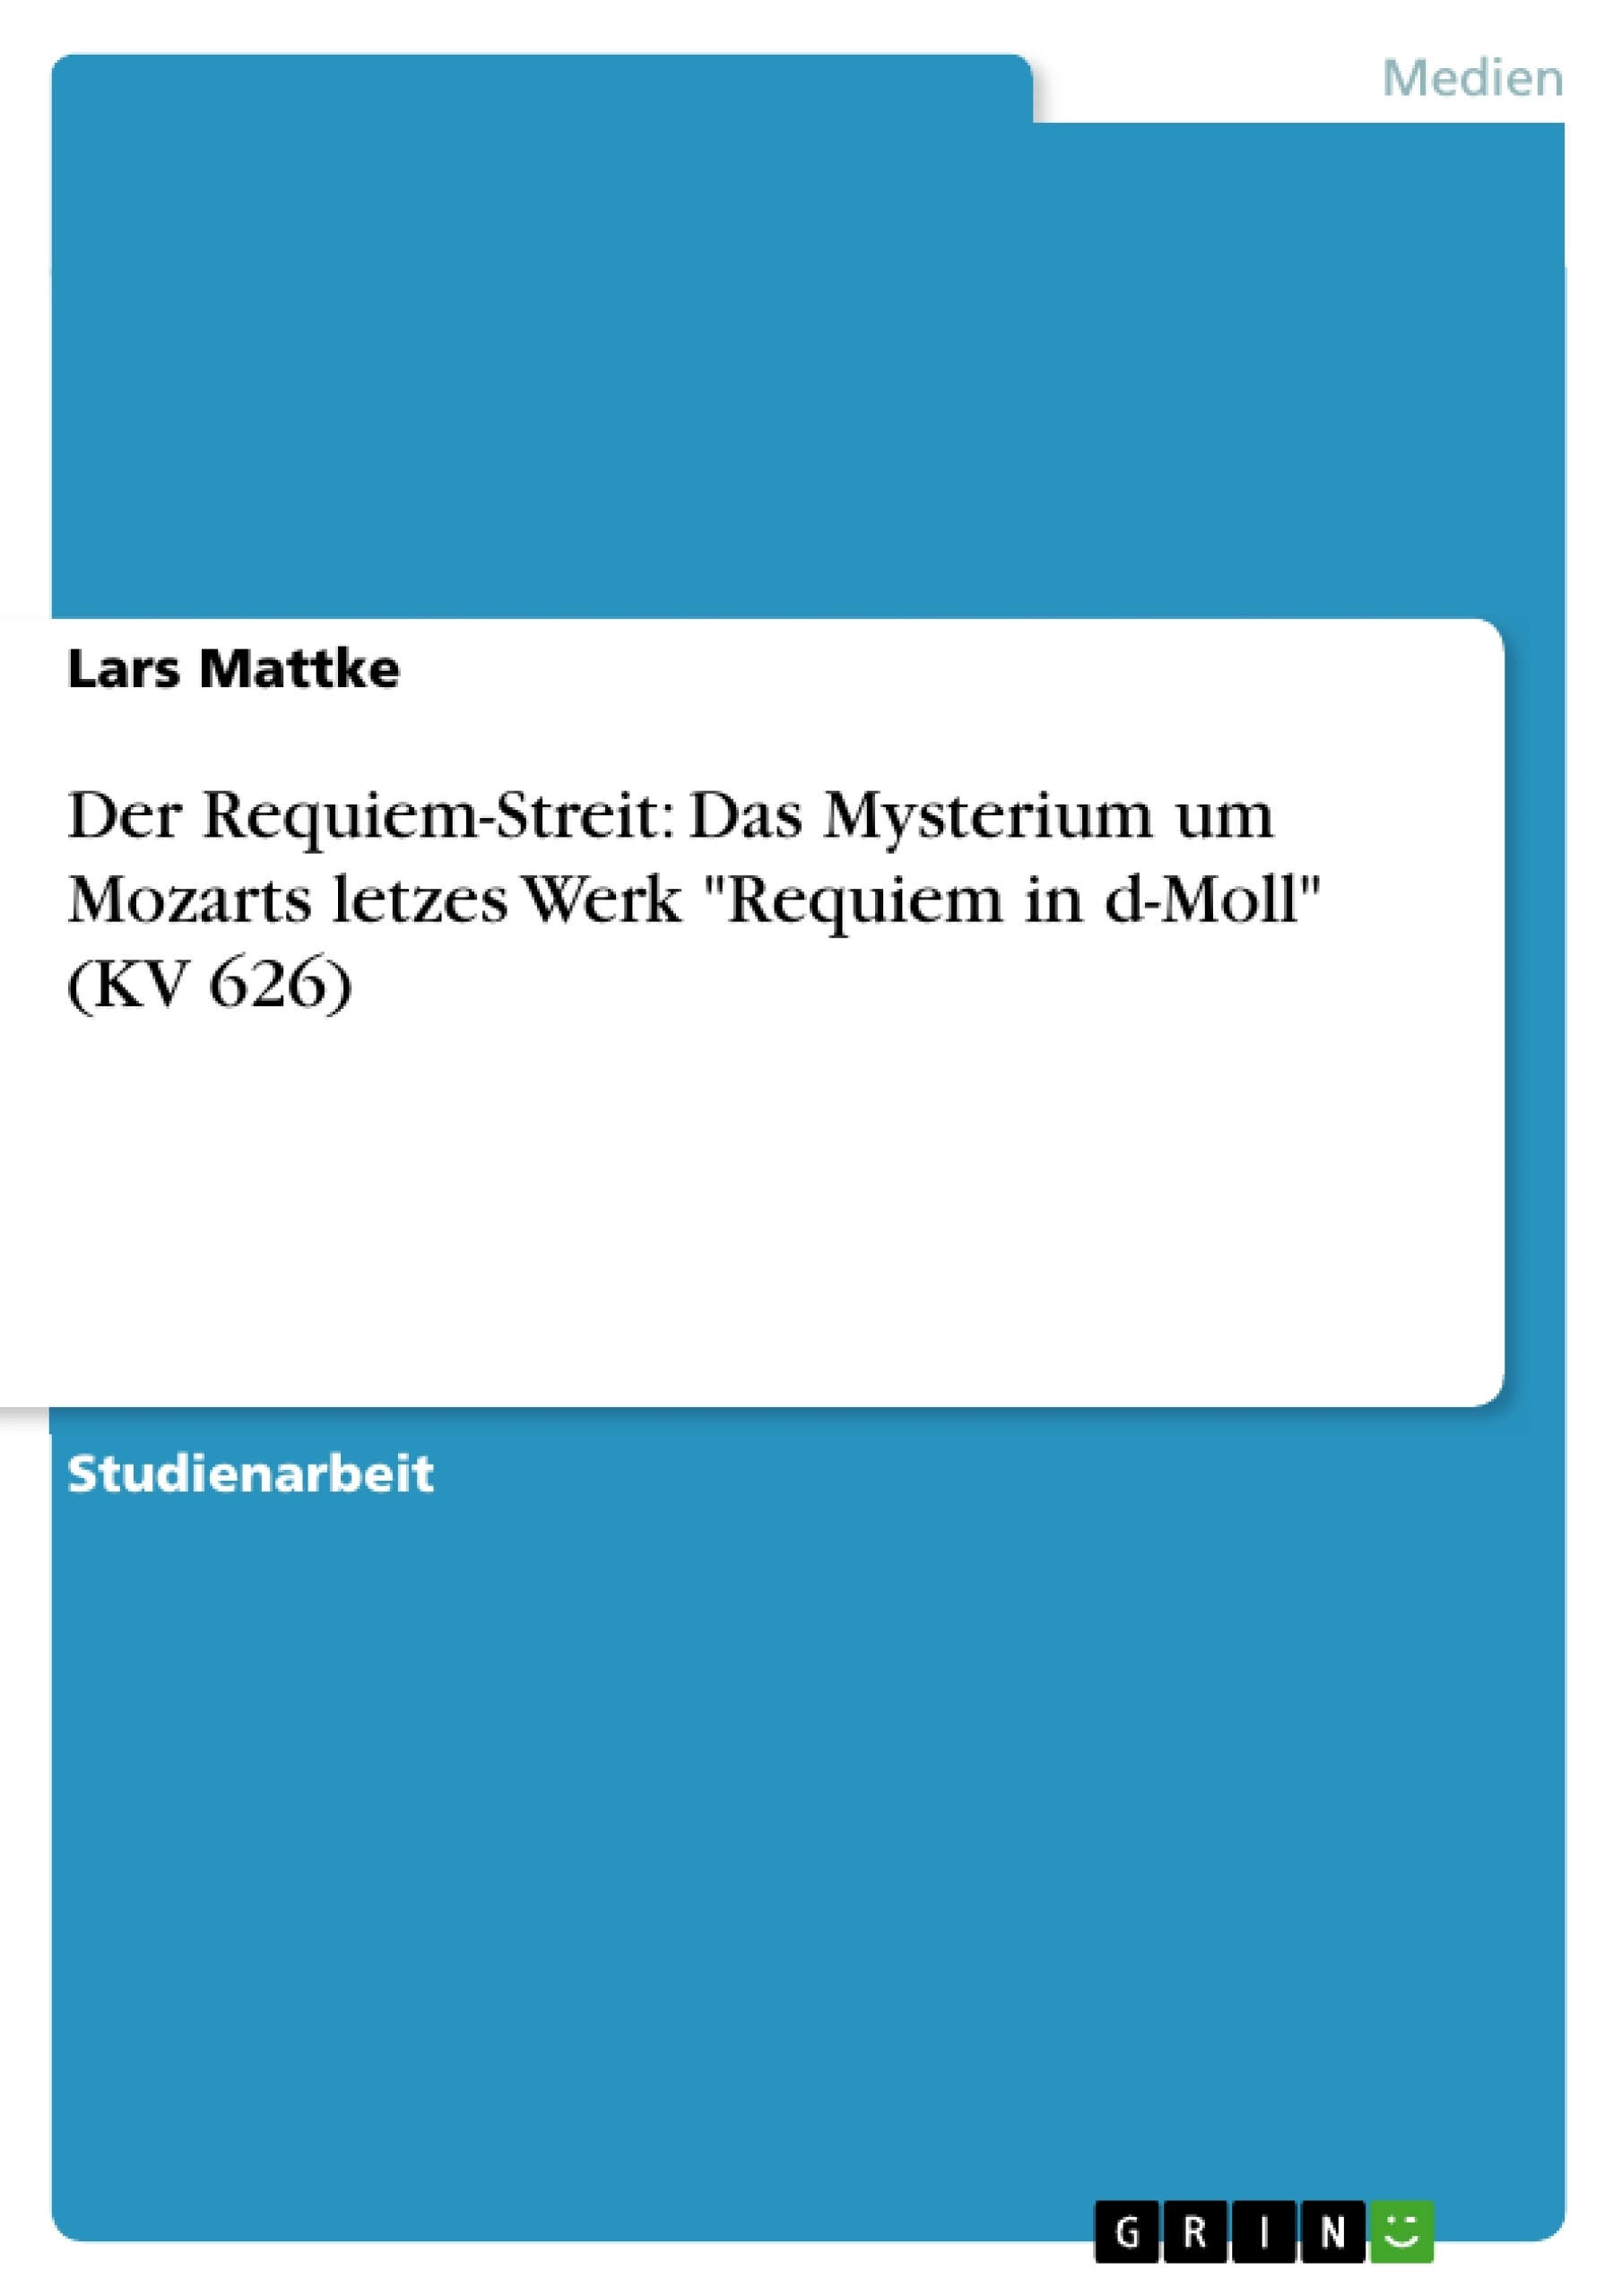 Titre: Der Requiem-Streit: Das Mysterium um Mozarts letzes Werk "Requiem in d-Moll" (KV 626)